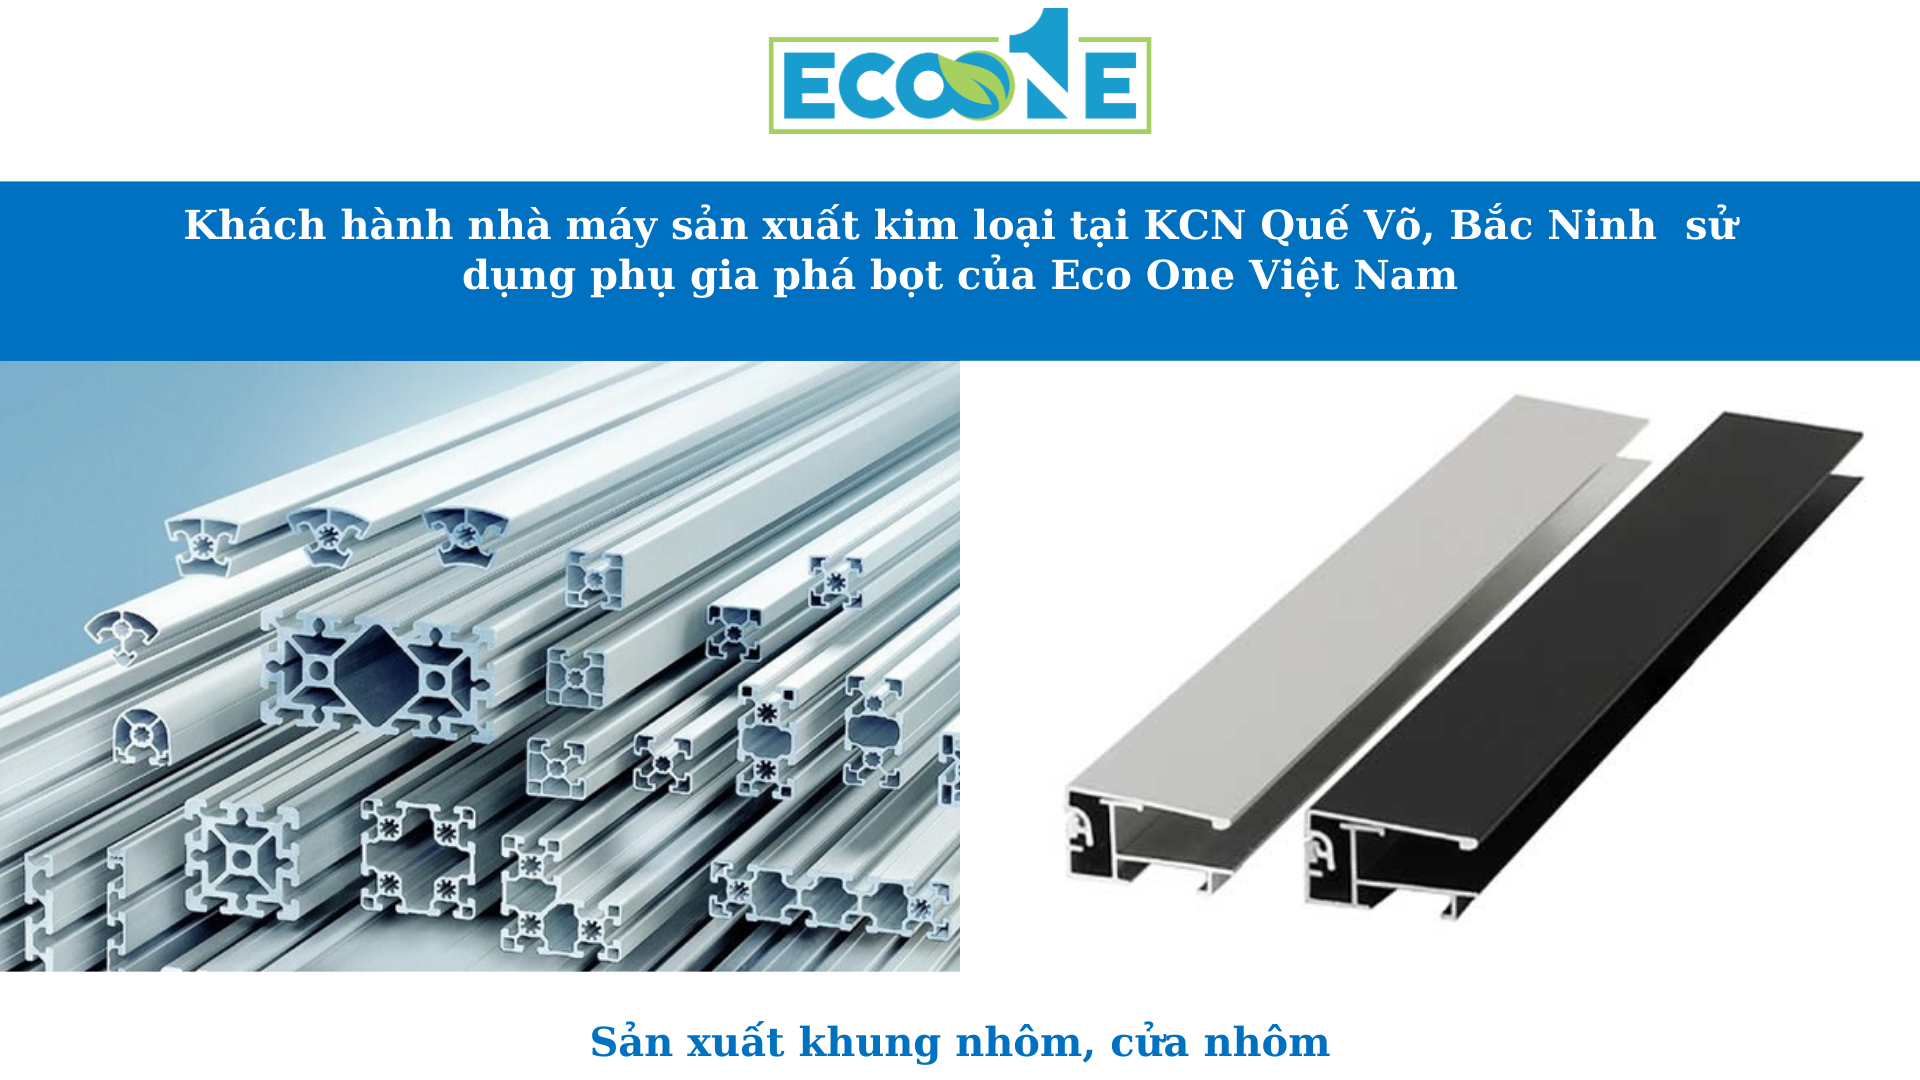 Khách hành nhà máy sản xuất kim loại tại KCN Quế Võ, Bắc Ninh sử dụng phụ gia phá bọt của Eco One Việt Nam